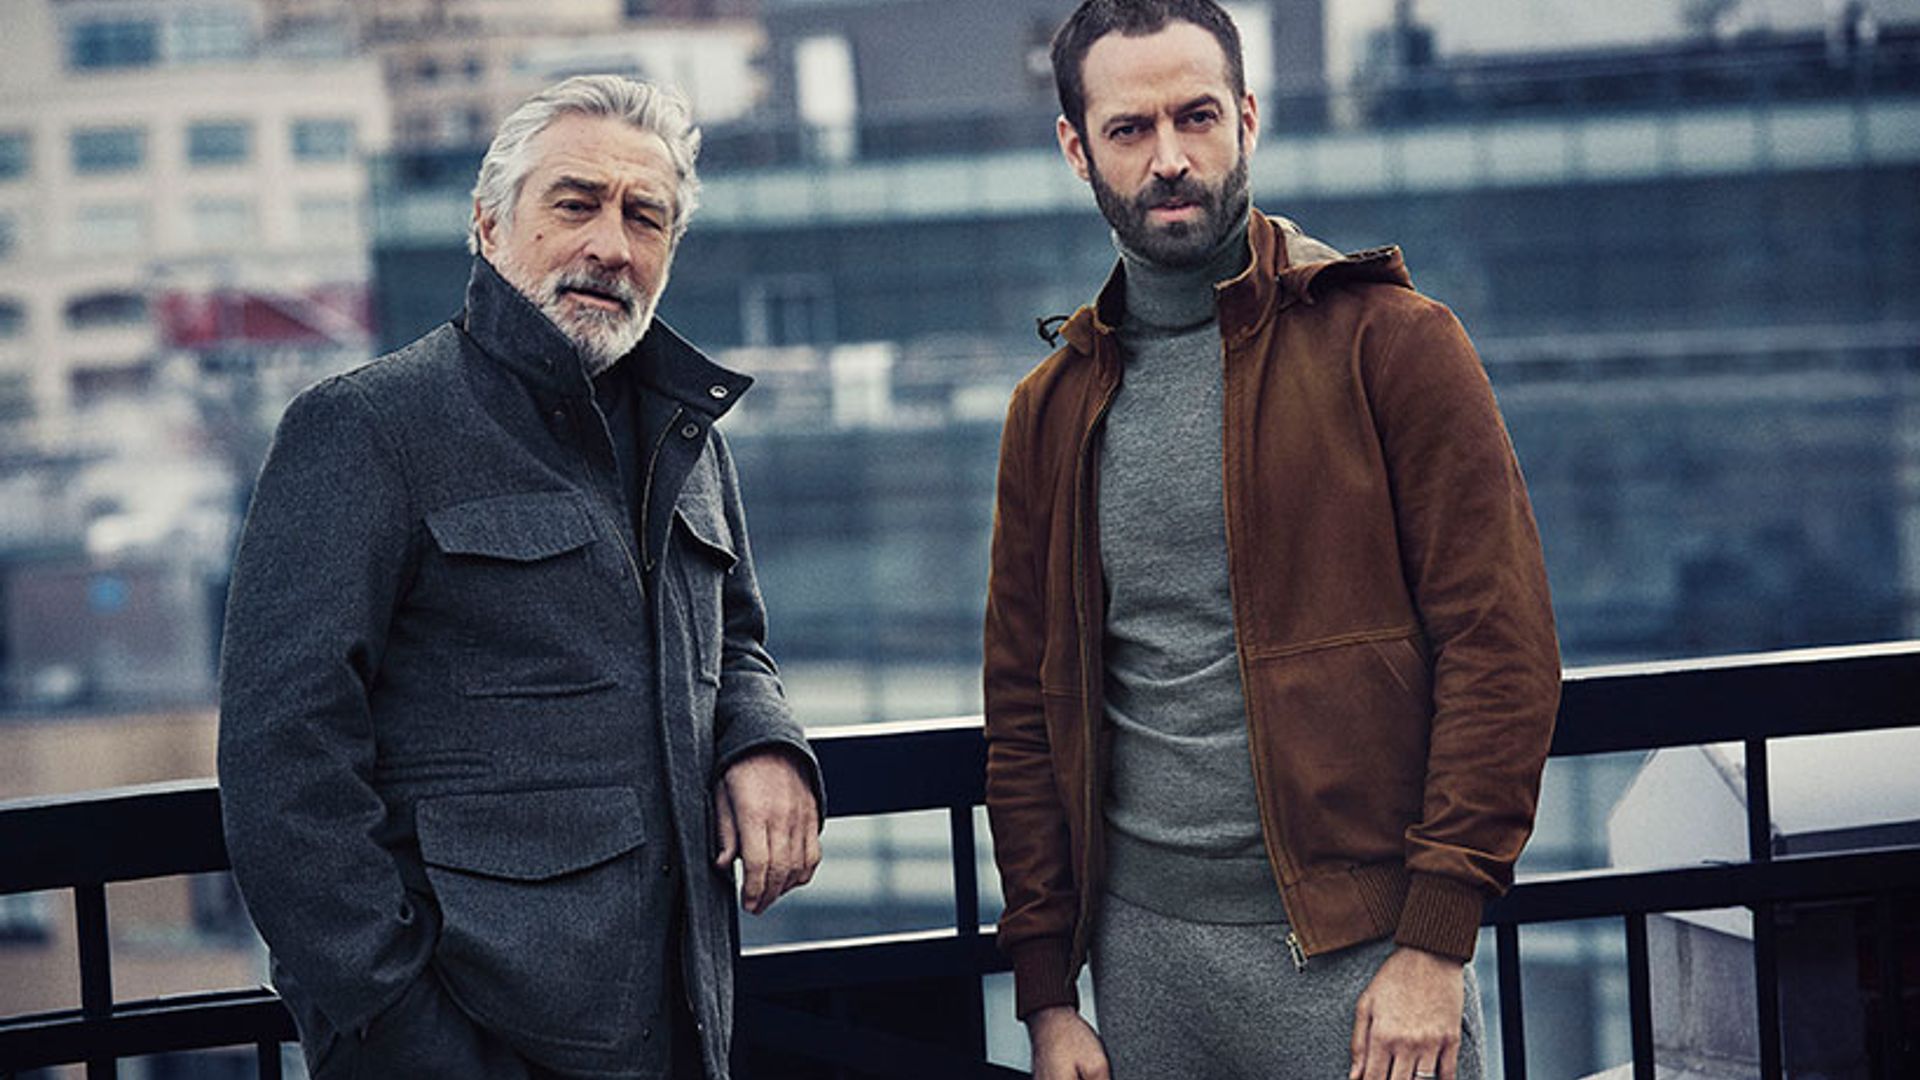 Robert De Niro and Benjamin Millepied suit up for new Ermenegildo Zegna campaign